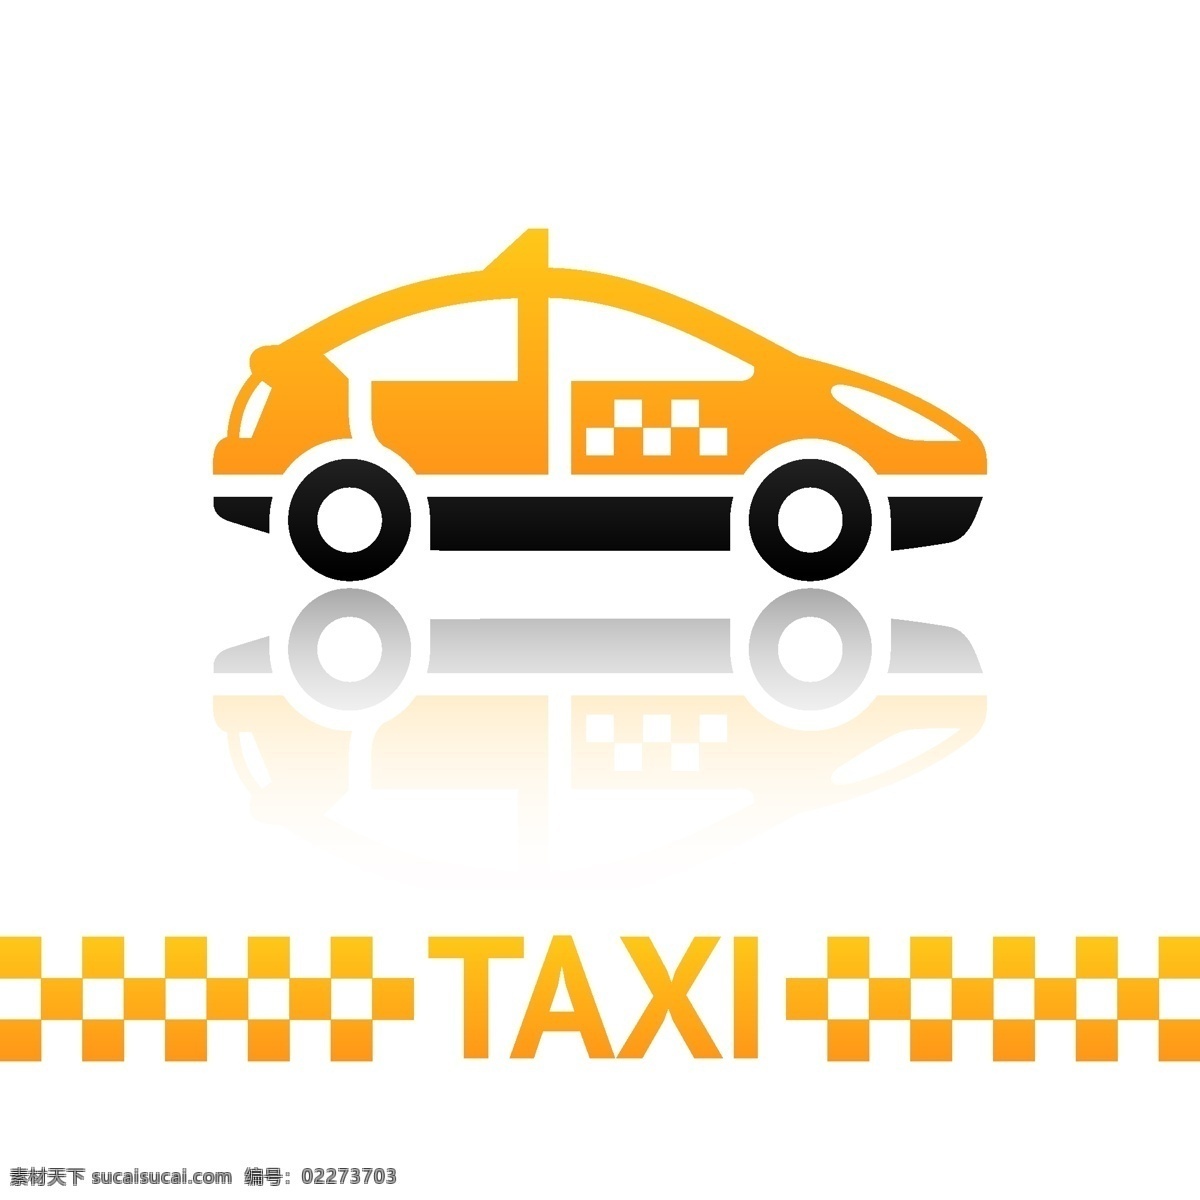 logo 标签 标识标志图标 标志 出租车 黑色 黄色 路标 图标 矢量 模板下载 taxi 打的 小图标 psd源文件